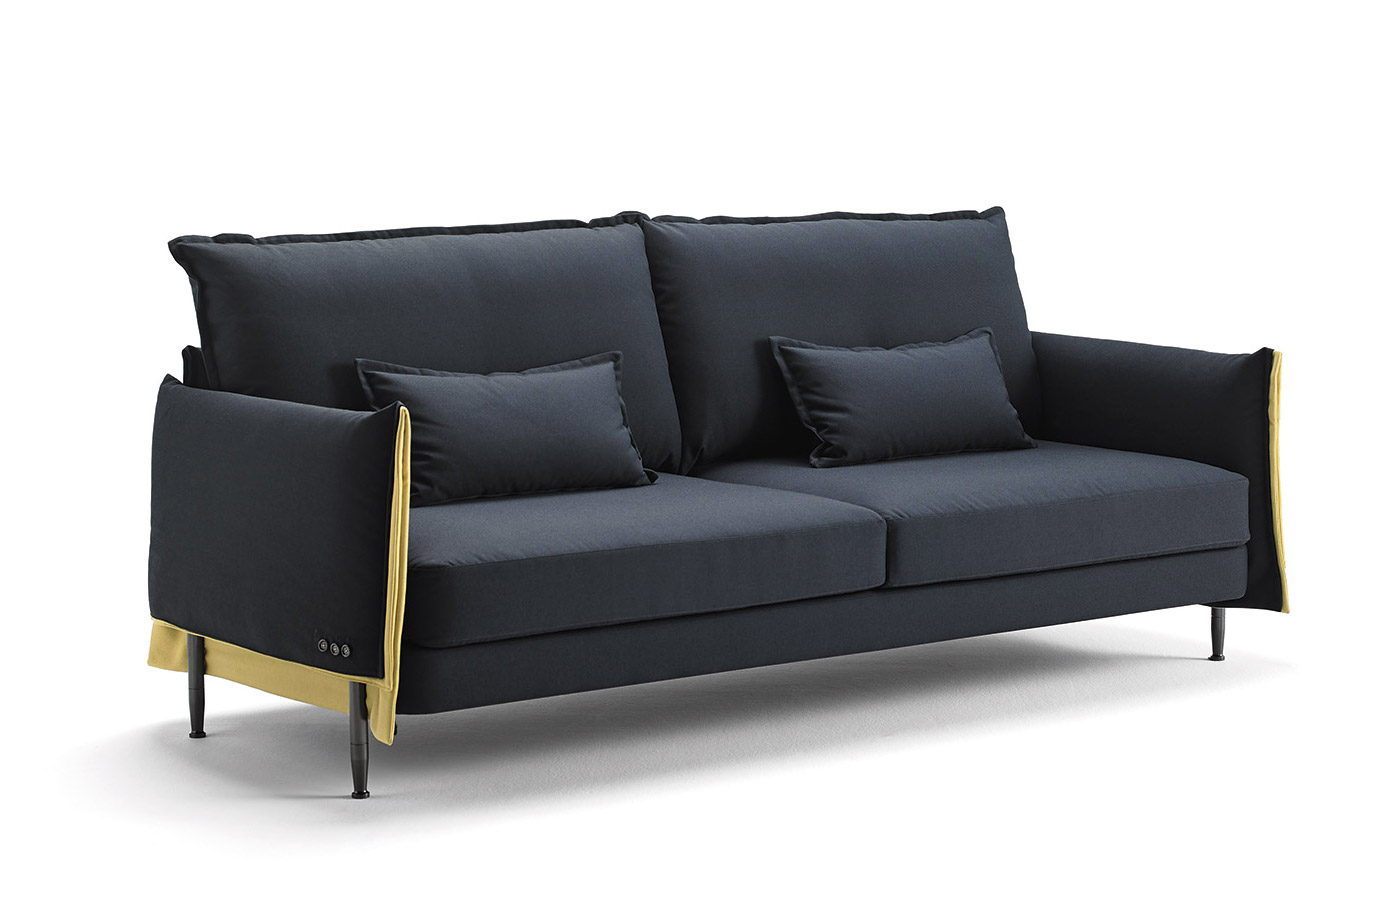 estudi(H)ac diseña Hardy para Blasco&Vila, el sofá que sienta como un guante